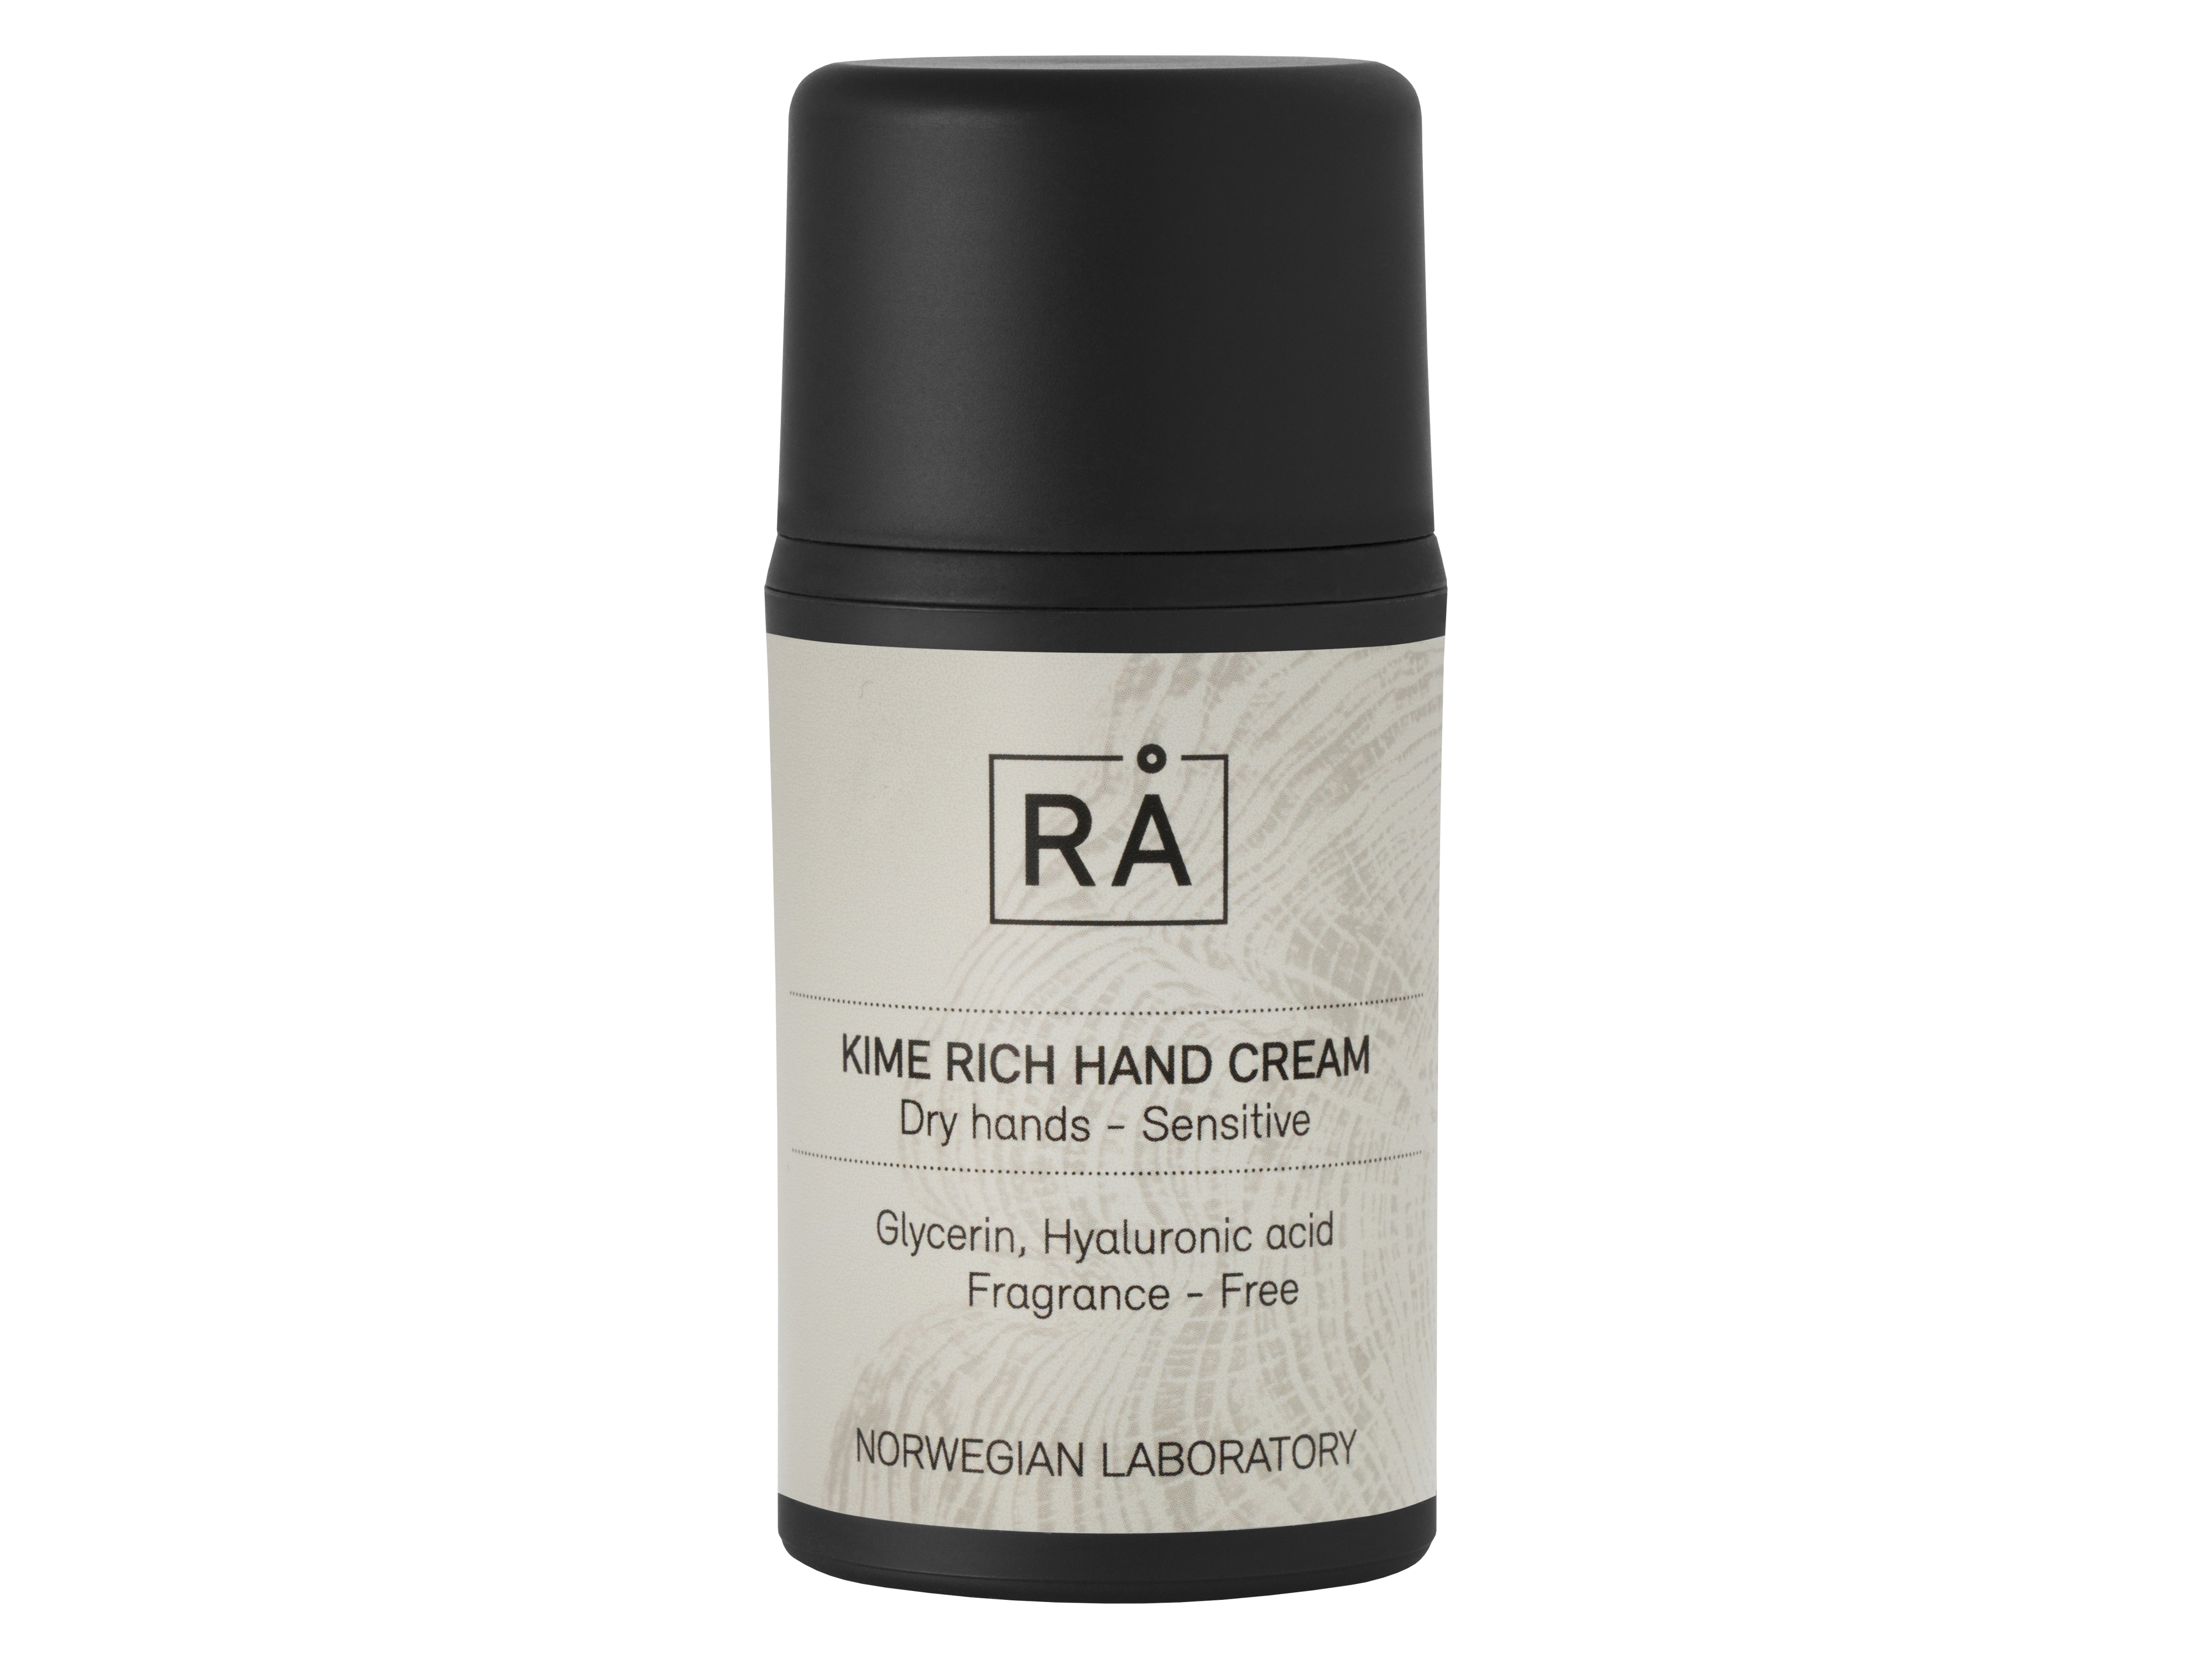 RÅ Kime Rich Hand Cream, 50 ml